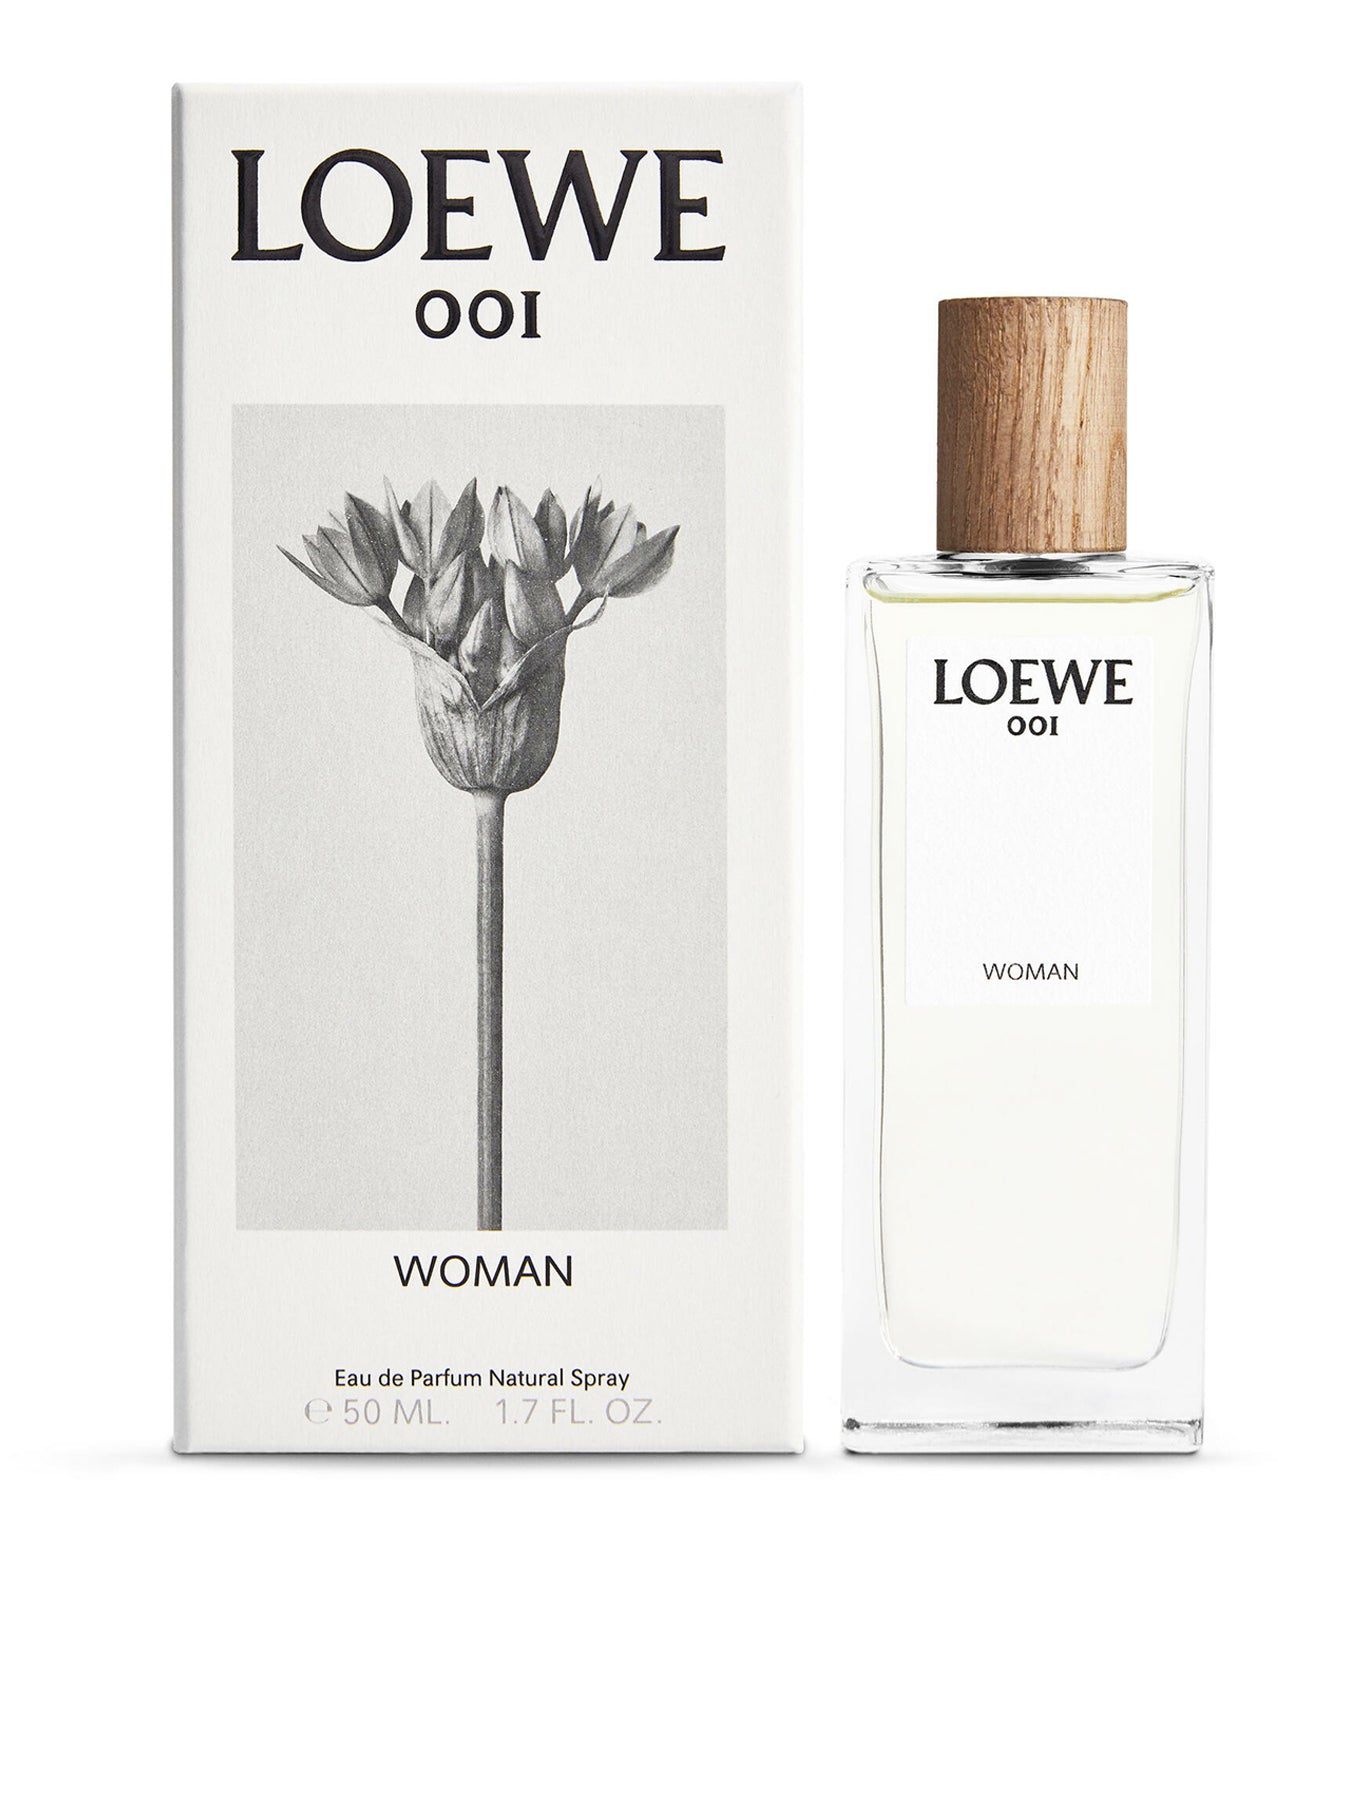 LOEWE 001 Eau de Parfum 100ML